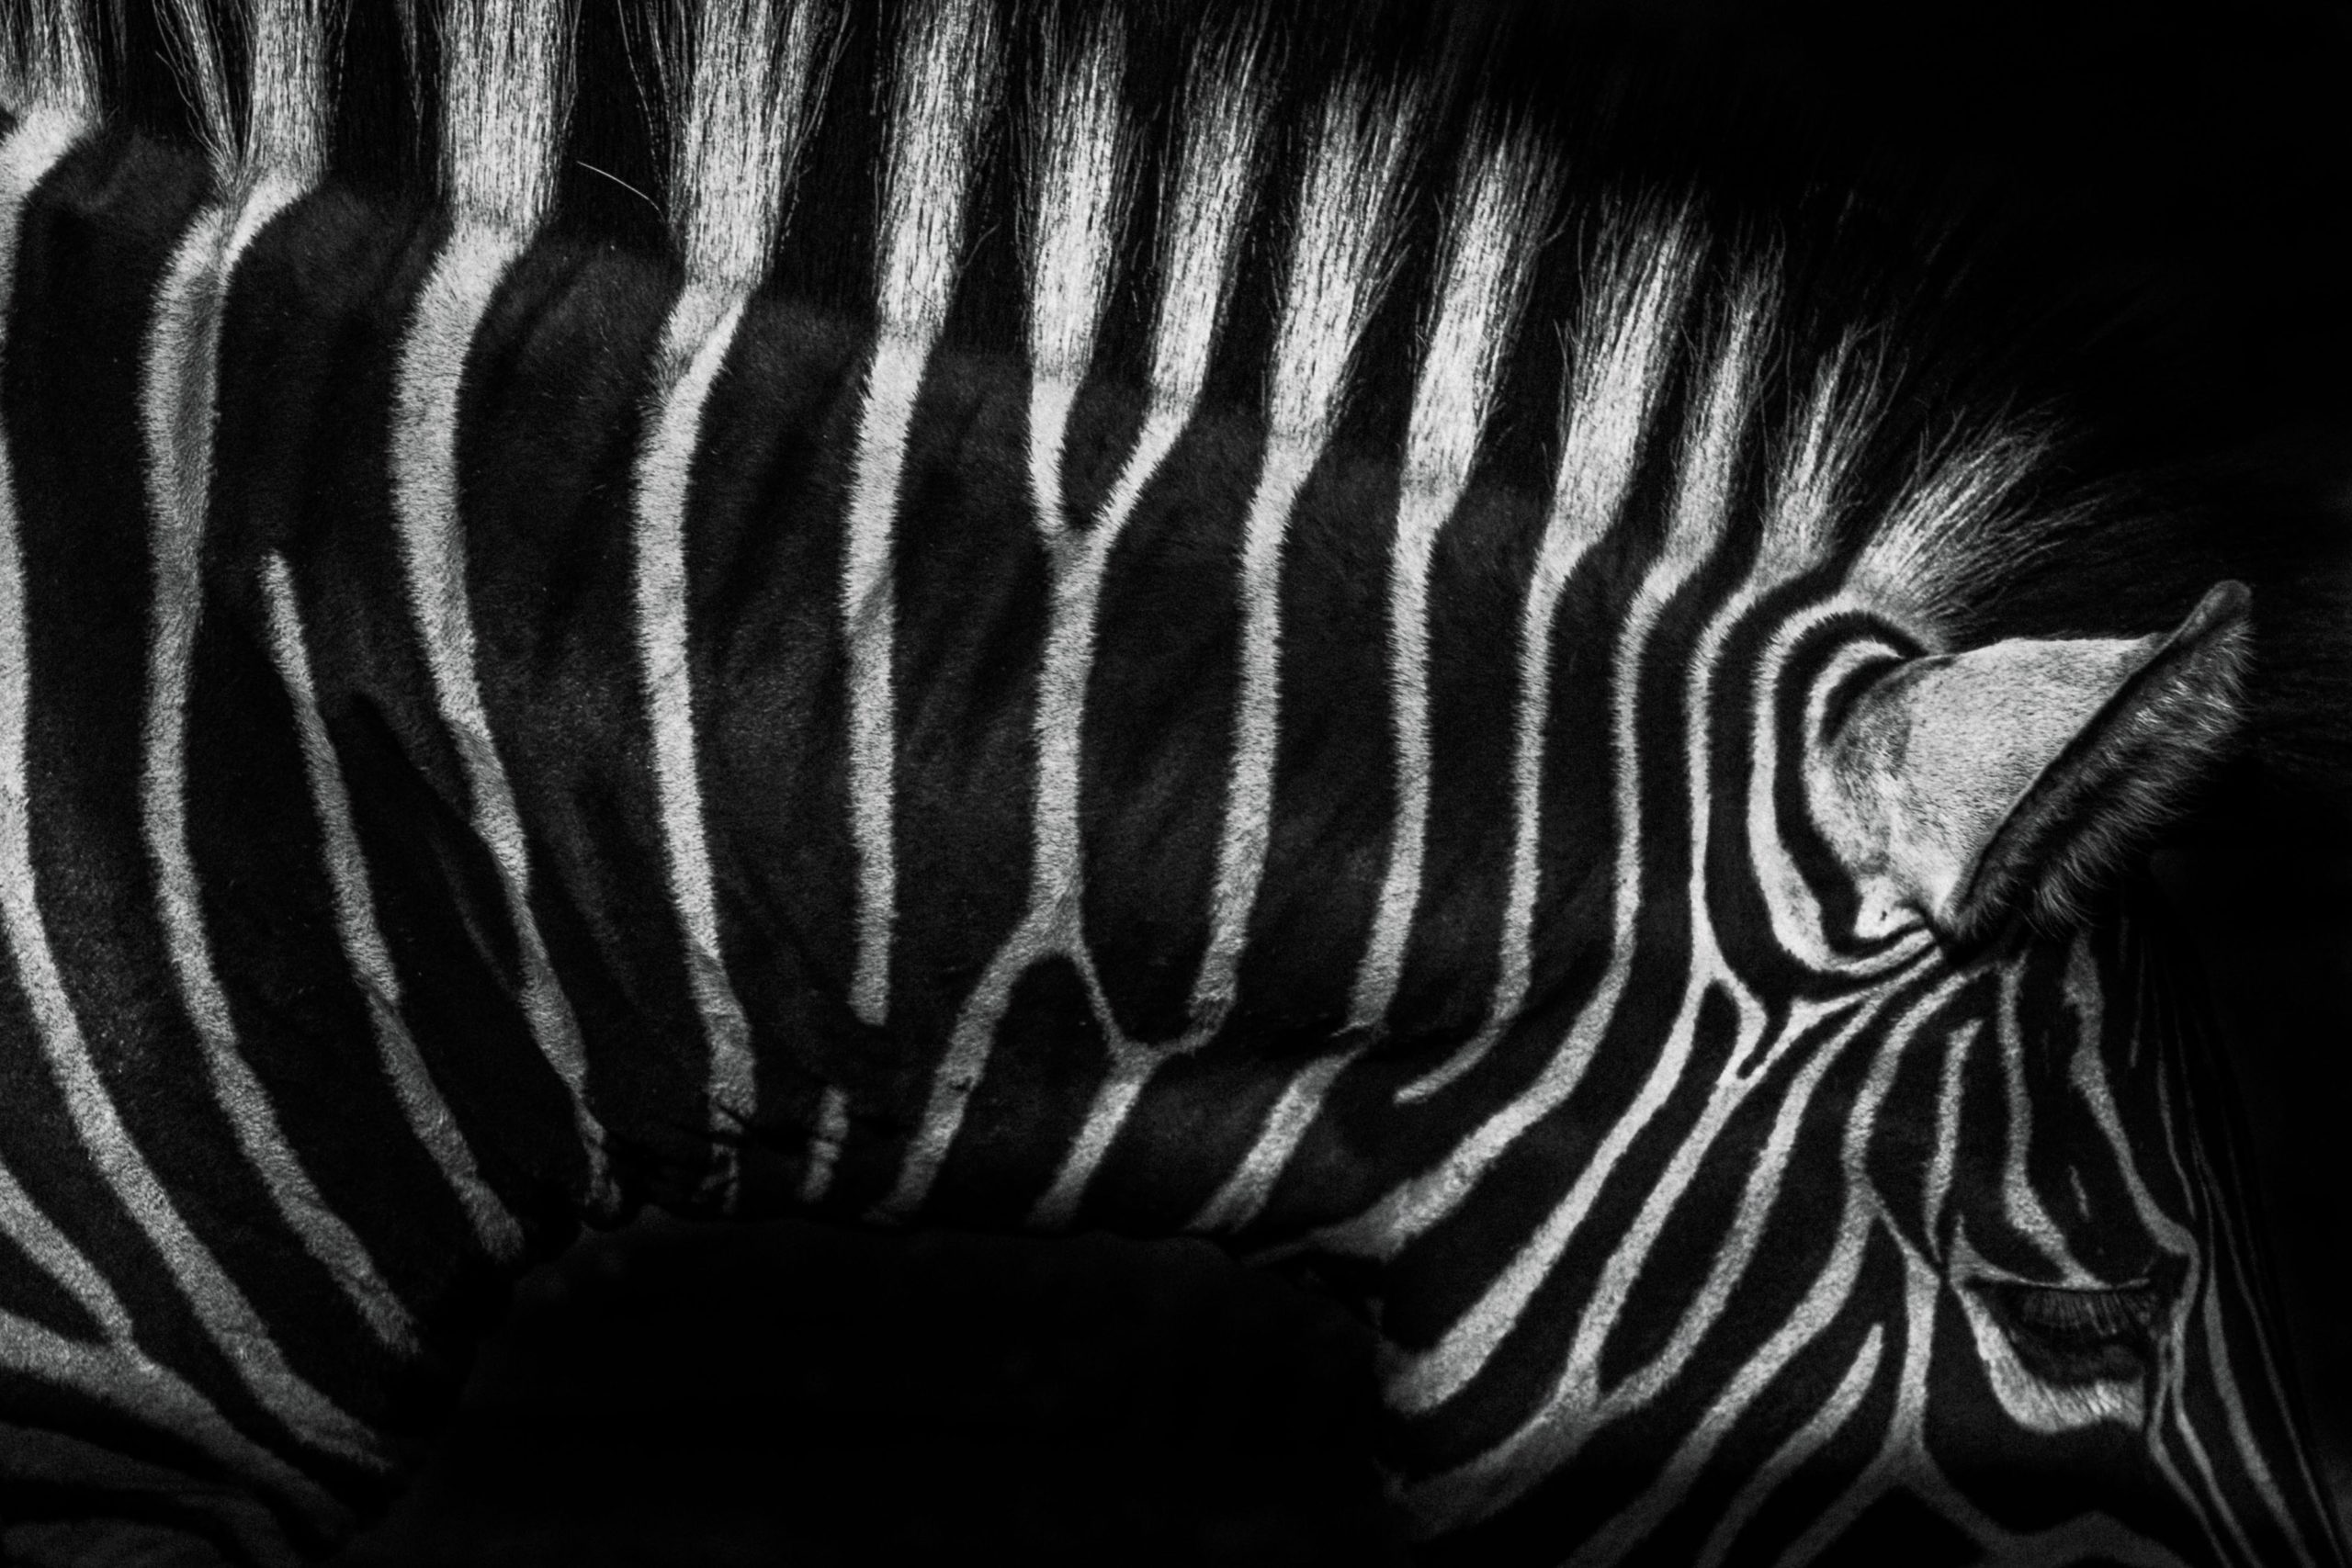 Black and white zebra stripes